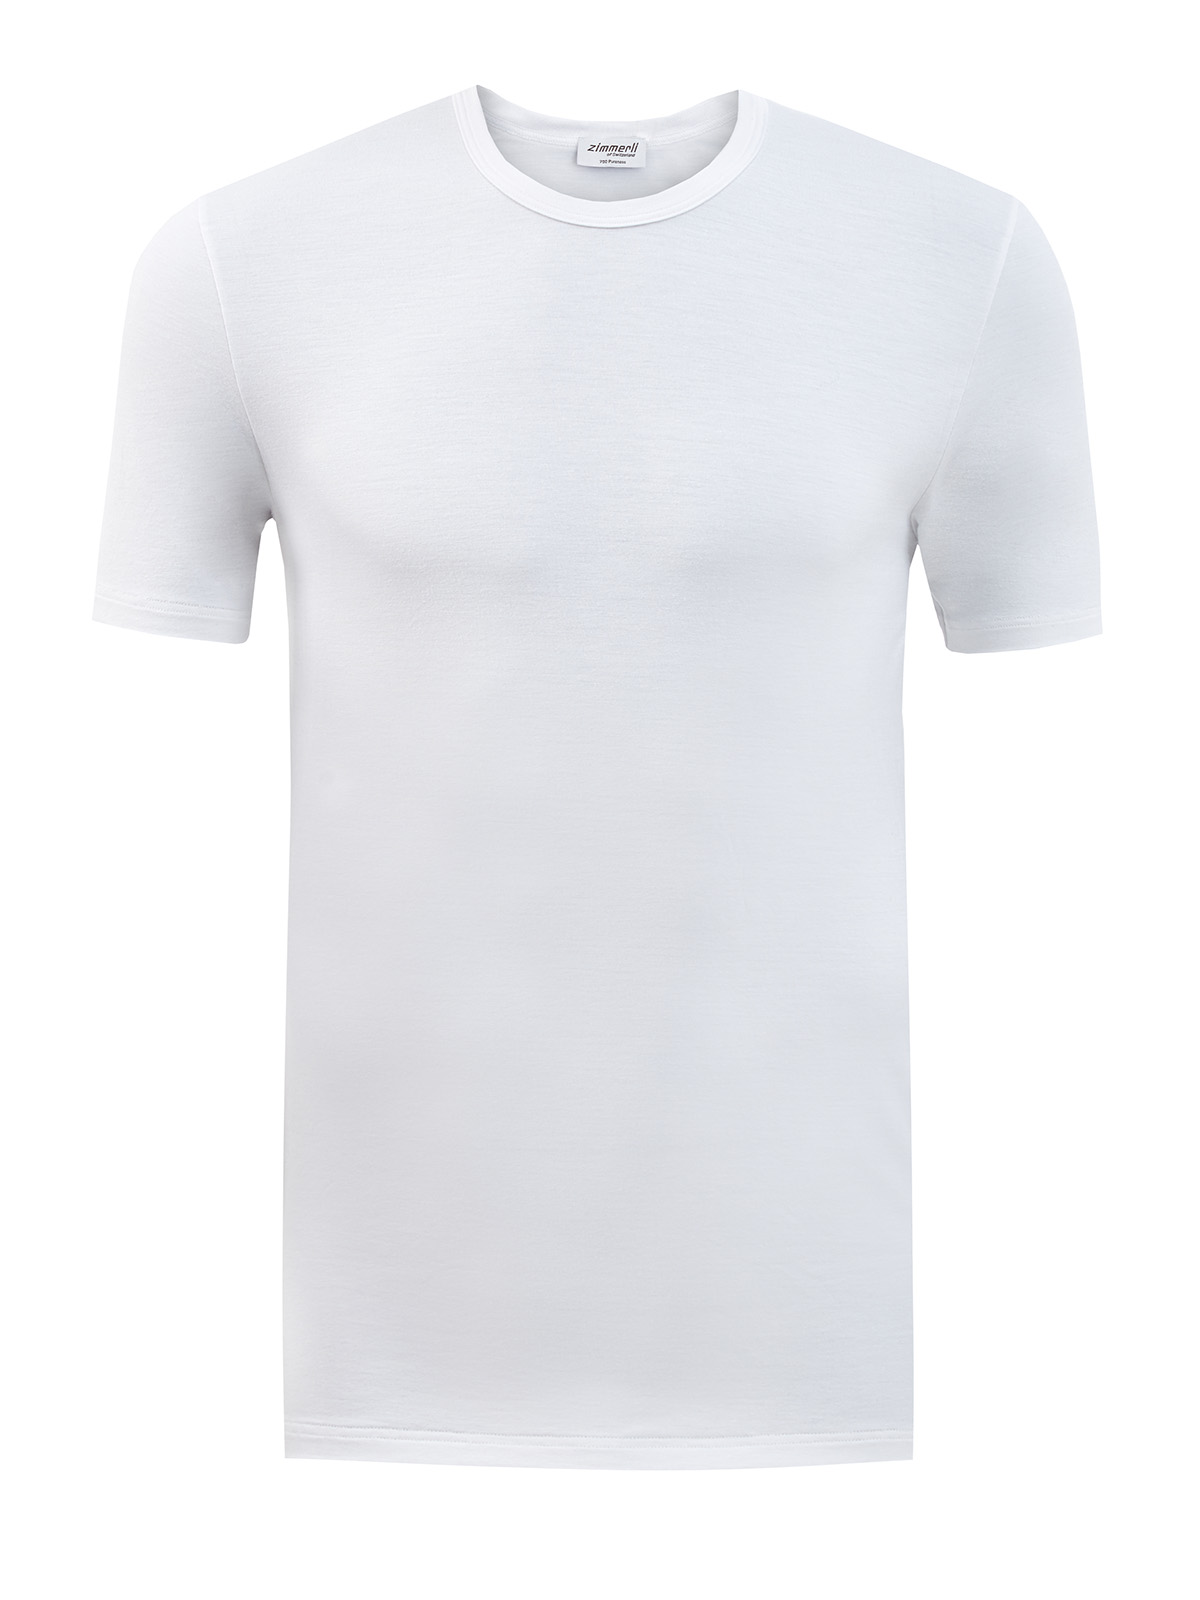 Облегающая футболка из эластичной вискозной ткани ZIMMERLI, цвет белый, размер L;XL;M